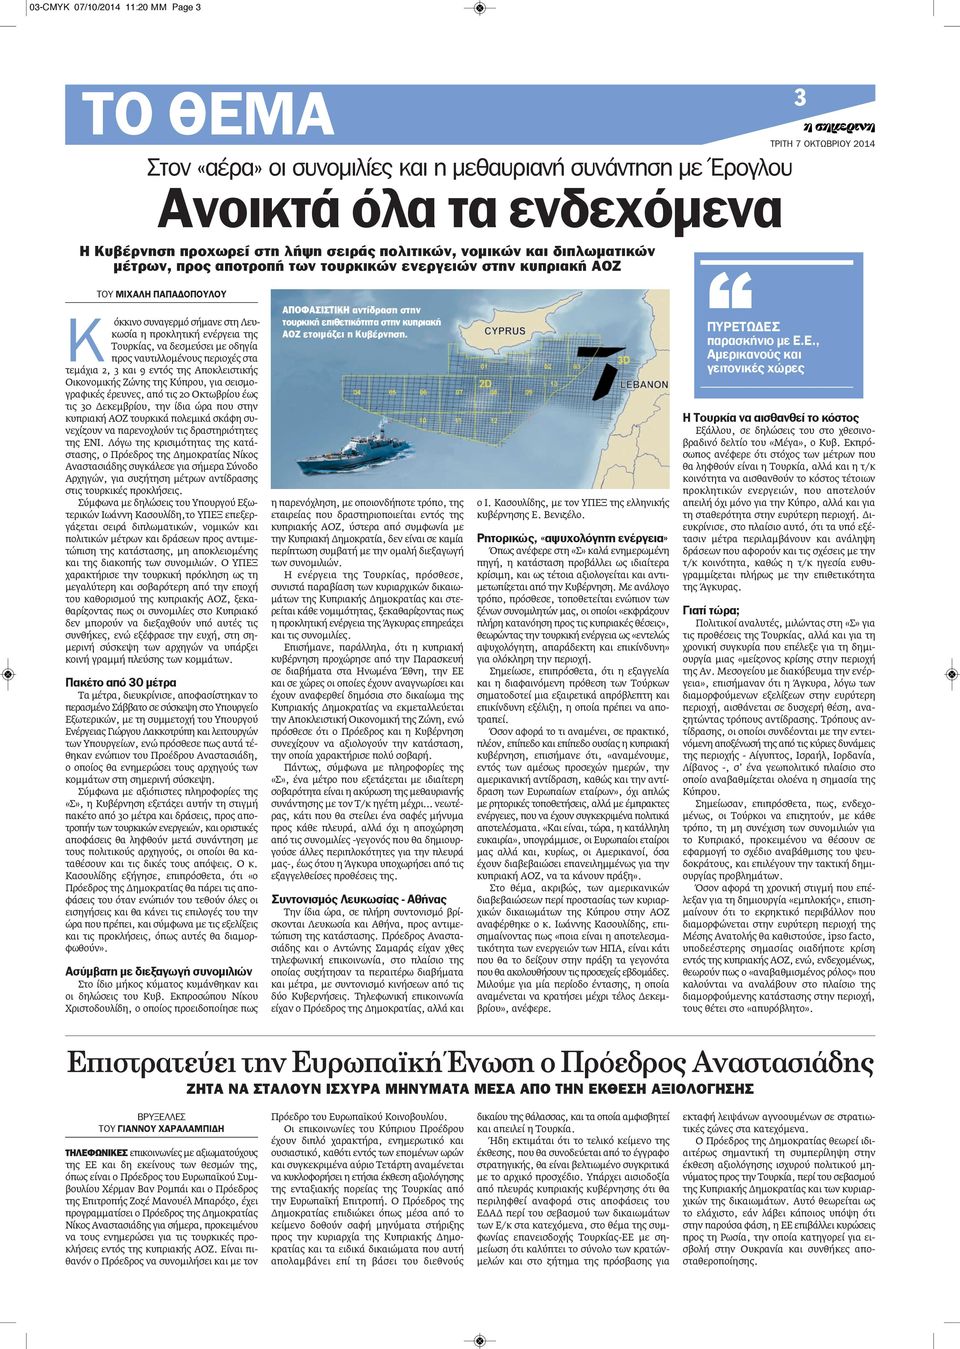 προς ναυτιλλομένους περιοχές στα τεμάχια 2, 3 και 9 εντός της Αποκλειστικής Οικονομικής Ζώνης της Κύπρου, για σεισμογραφικές έρευνες, από τις 20 Οκτωβρίου έως τις 30 Δεκεμβρίου, την ίδια ώρα που στην